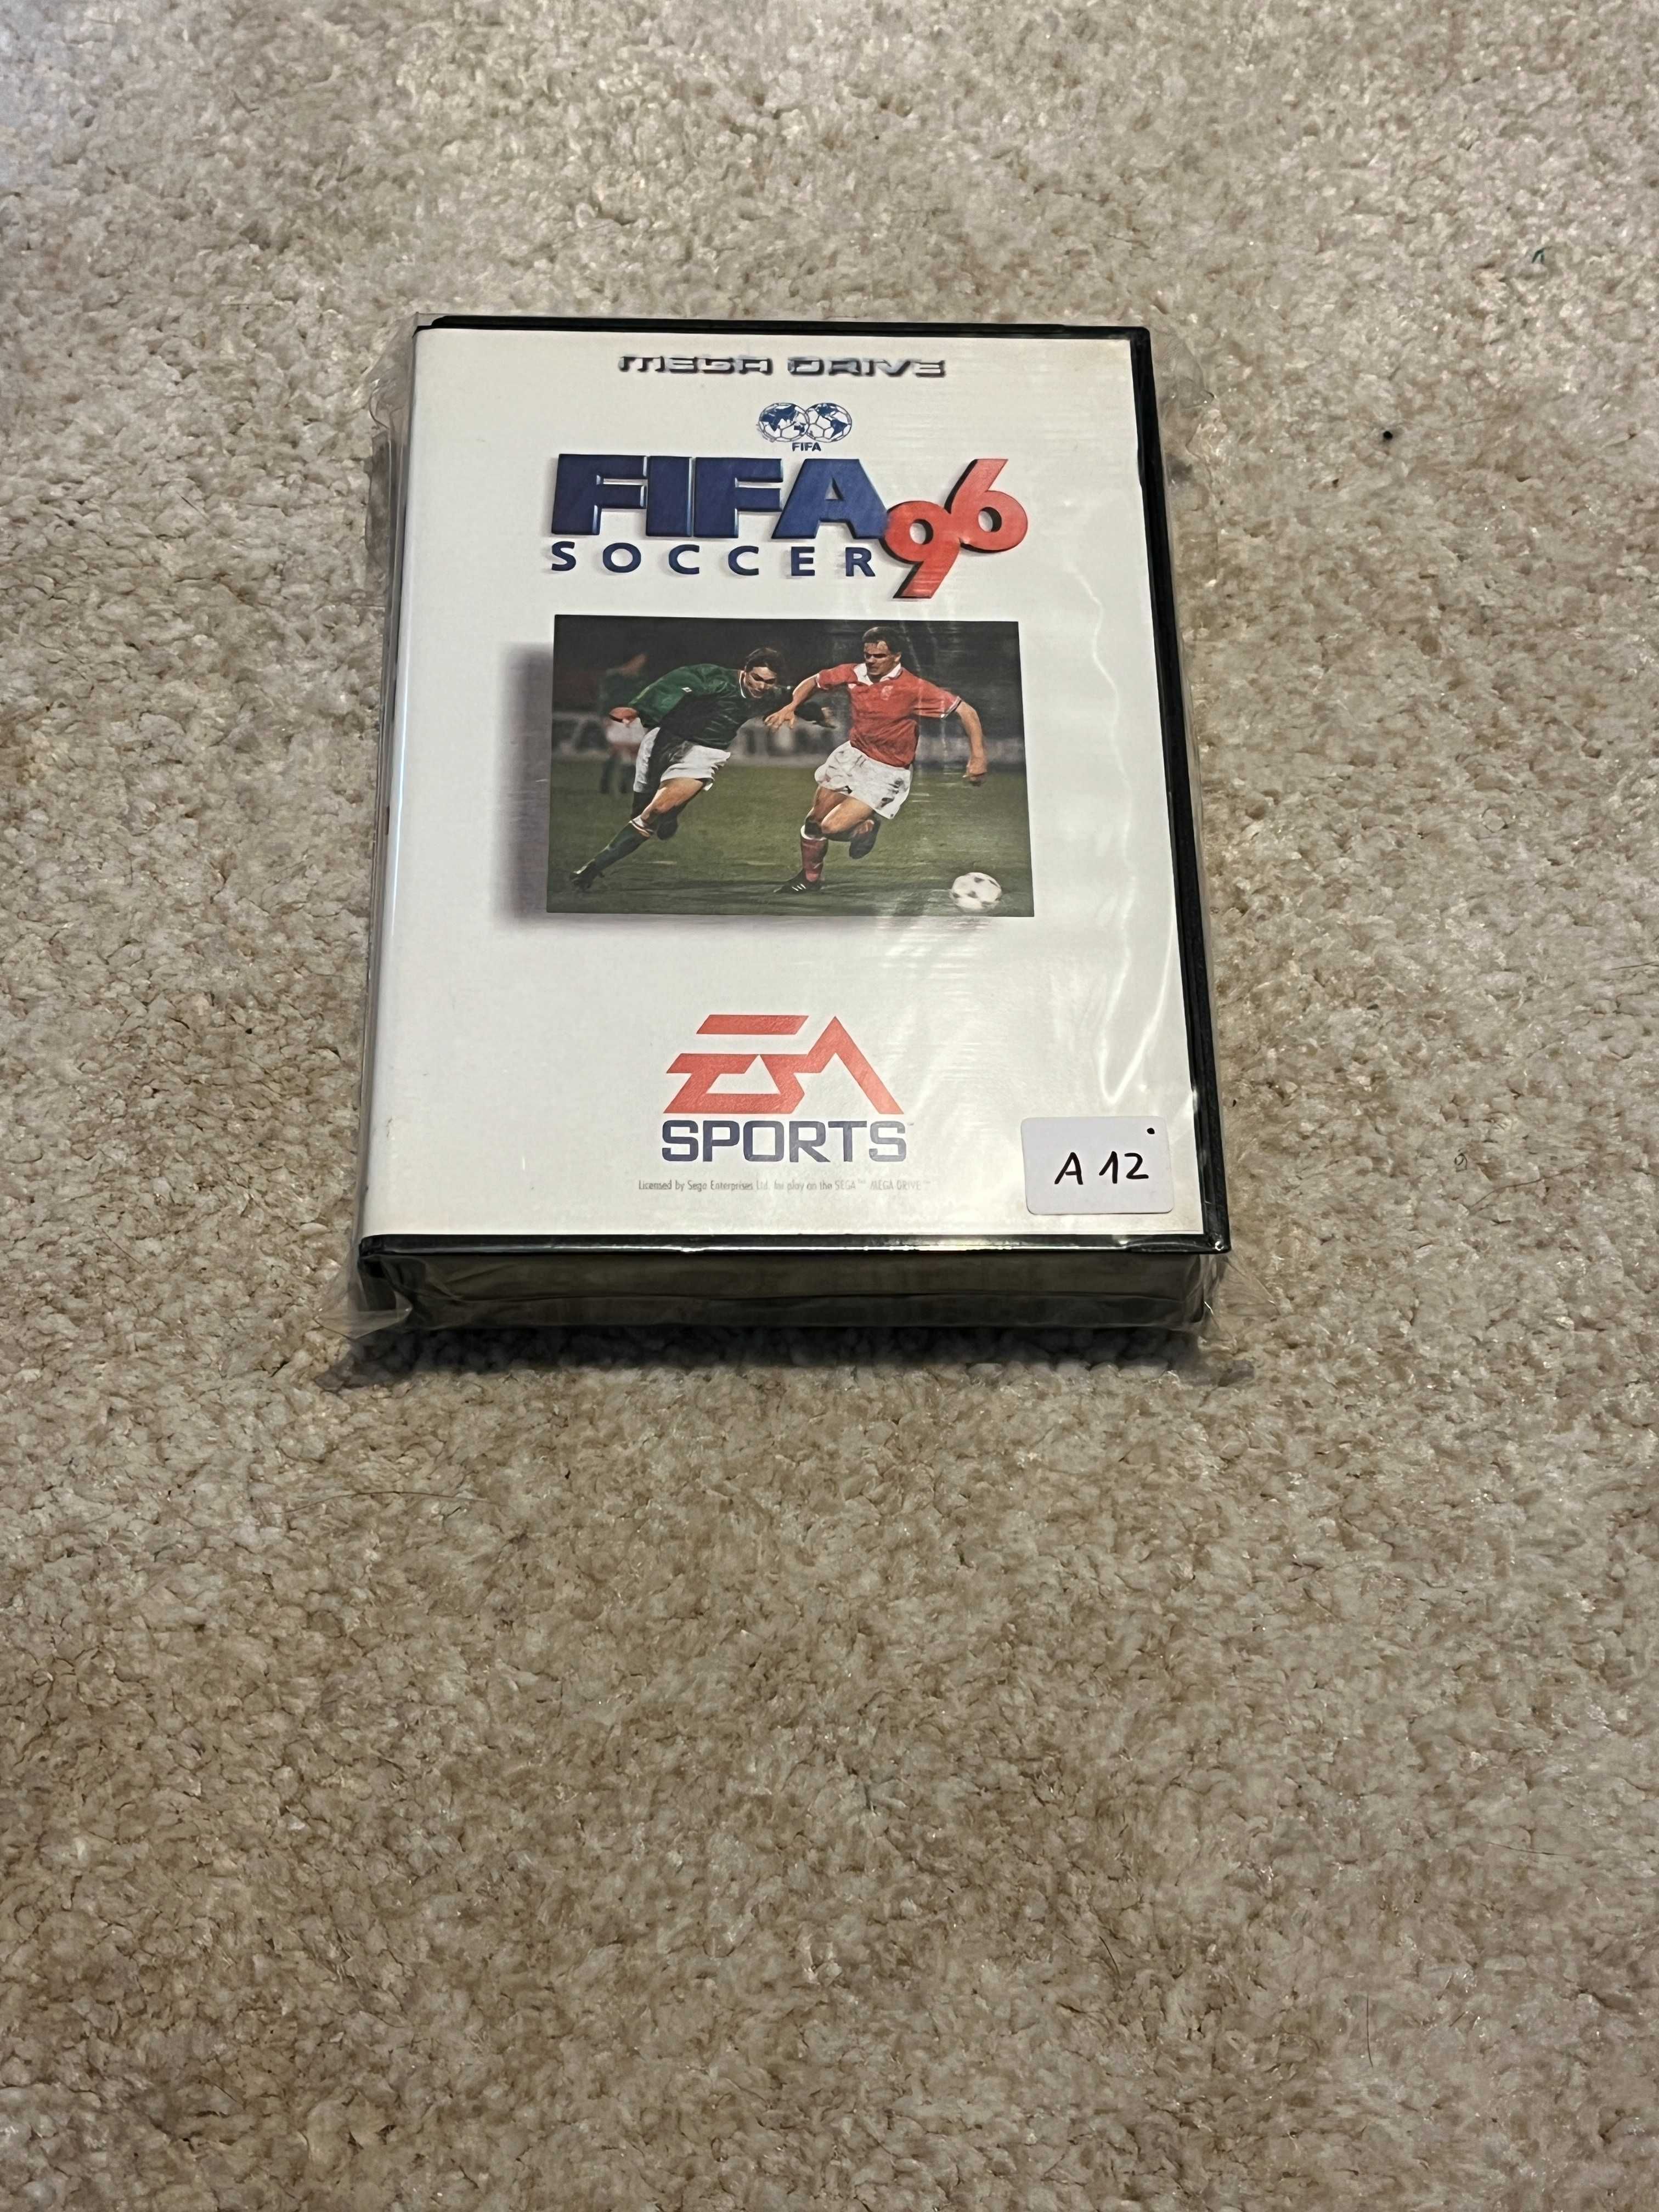 [Mega Drive] Vendo jogo Fifa 96 completo